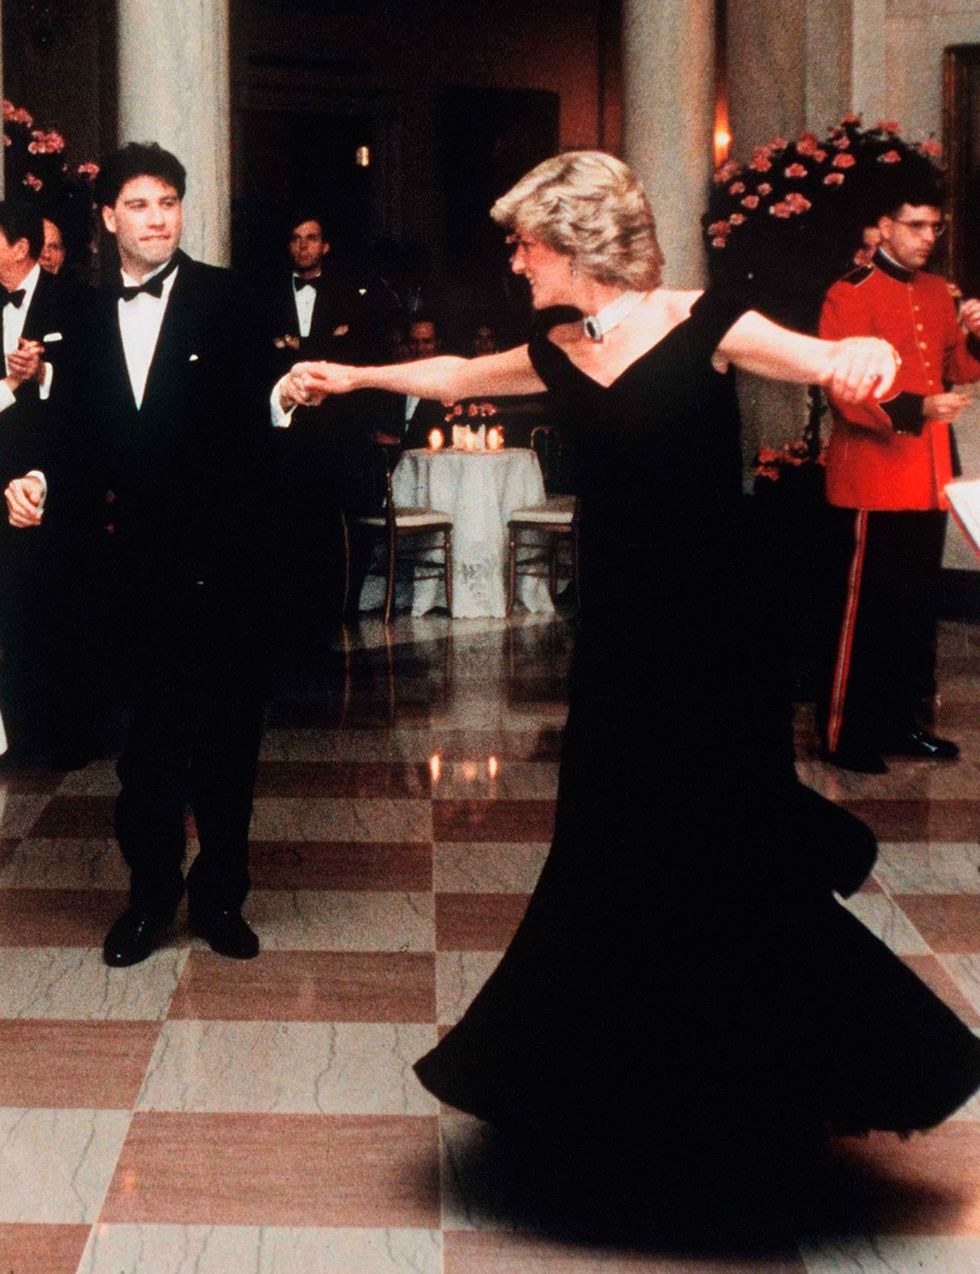 John Travolta dancing with Princess Diana